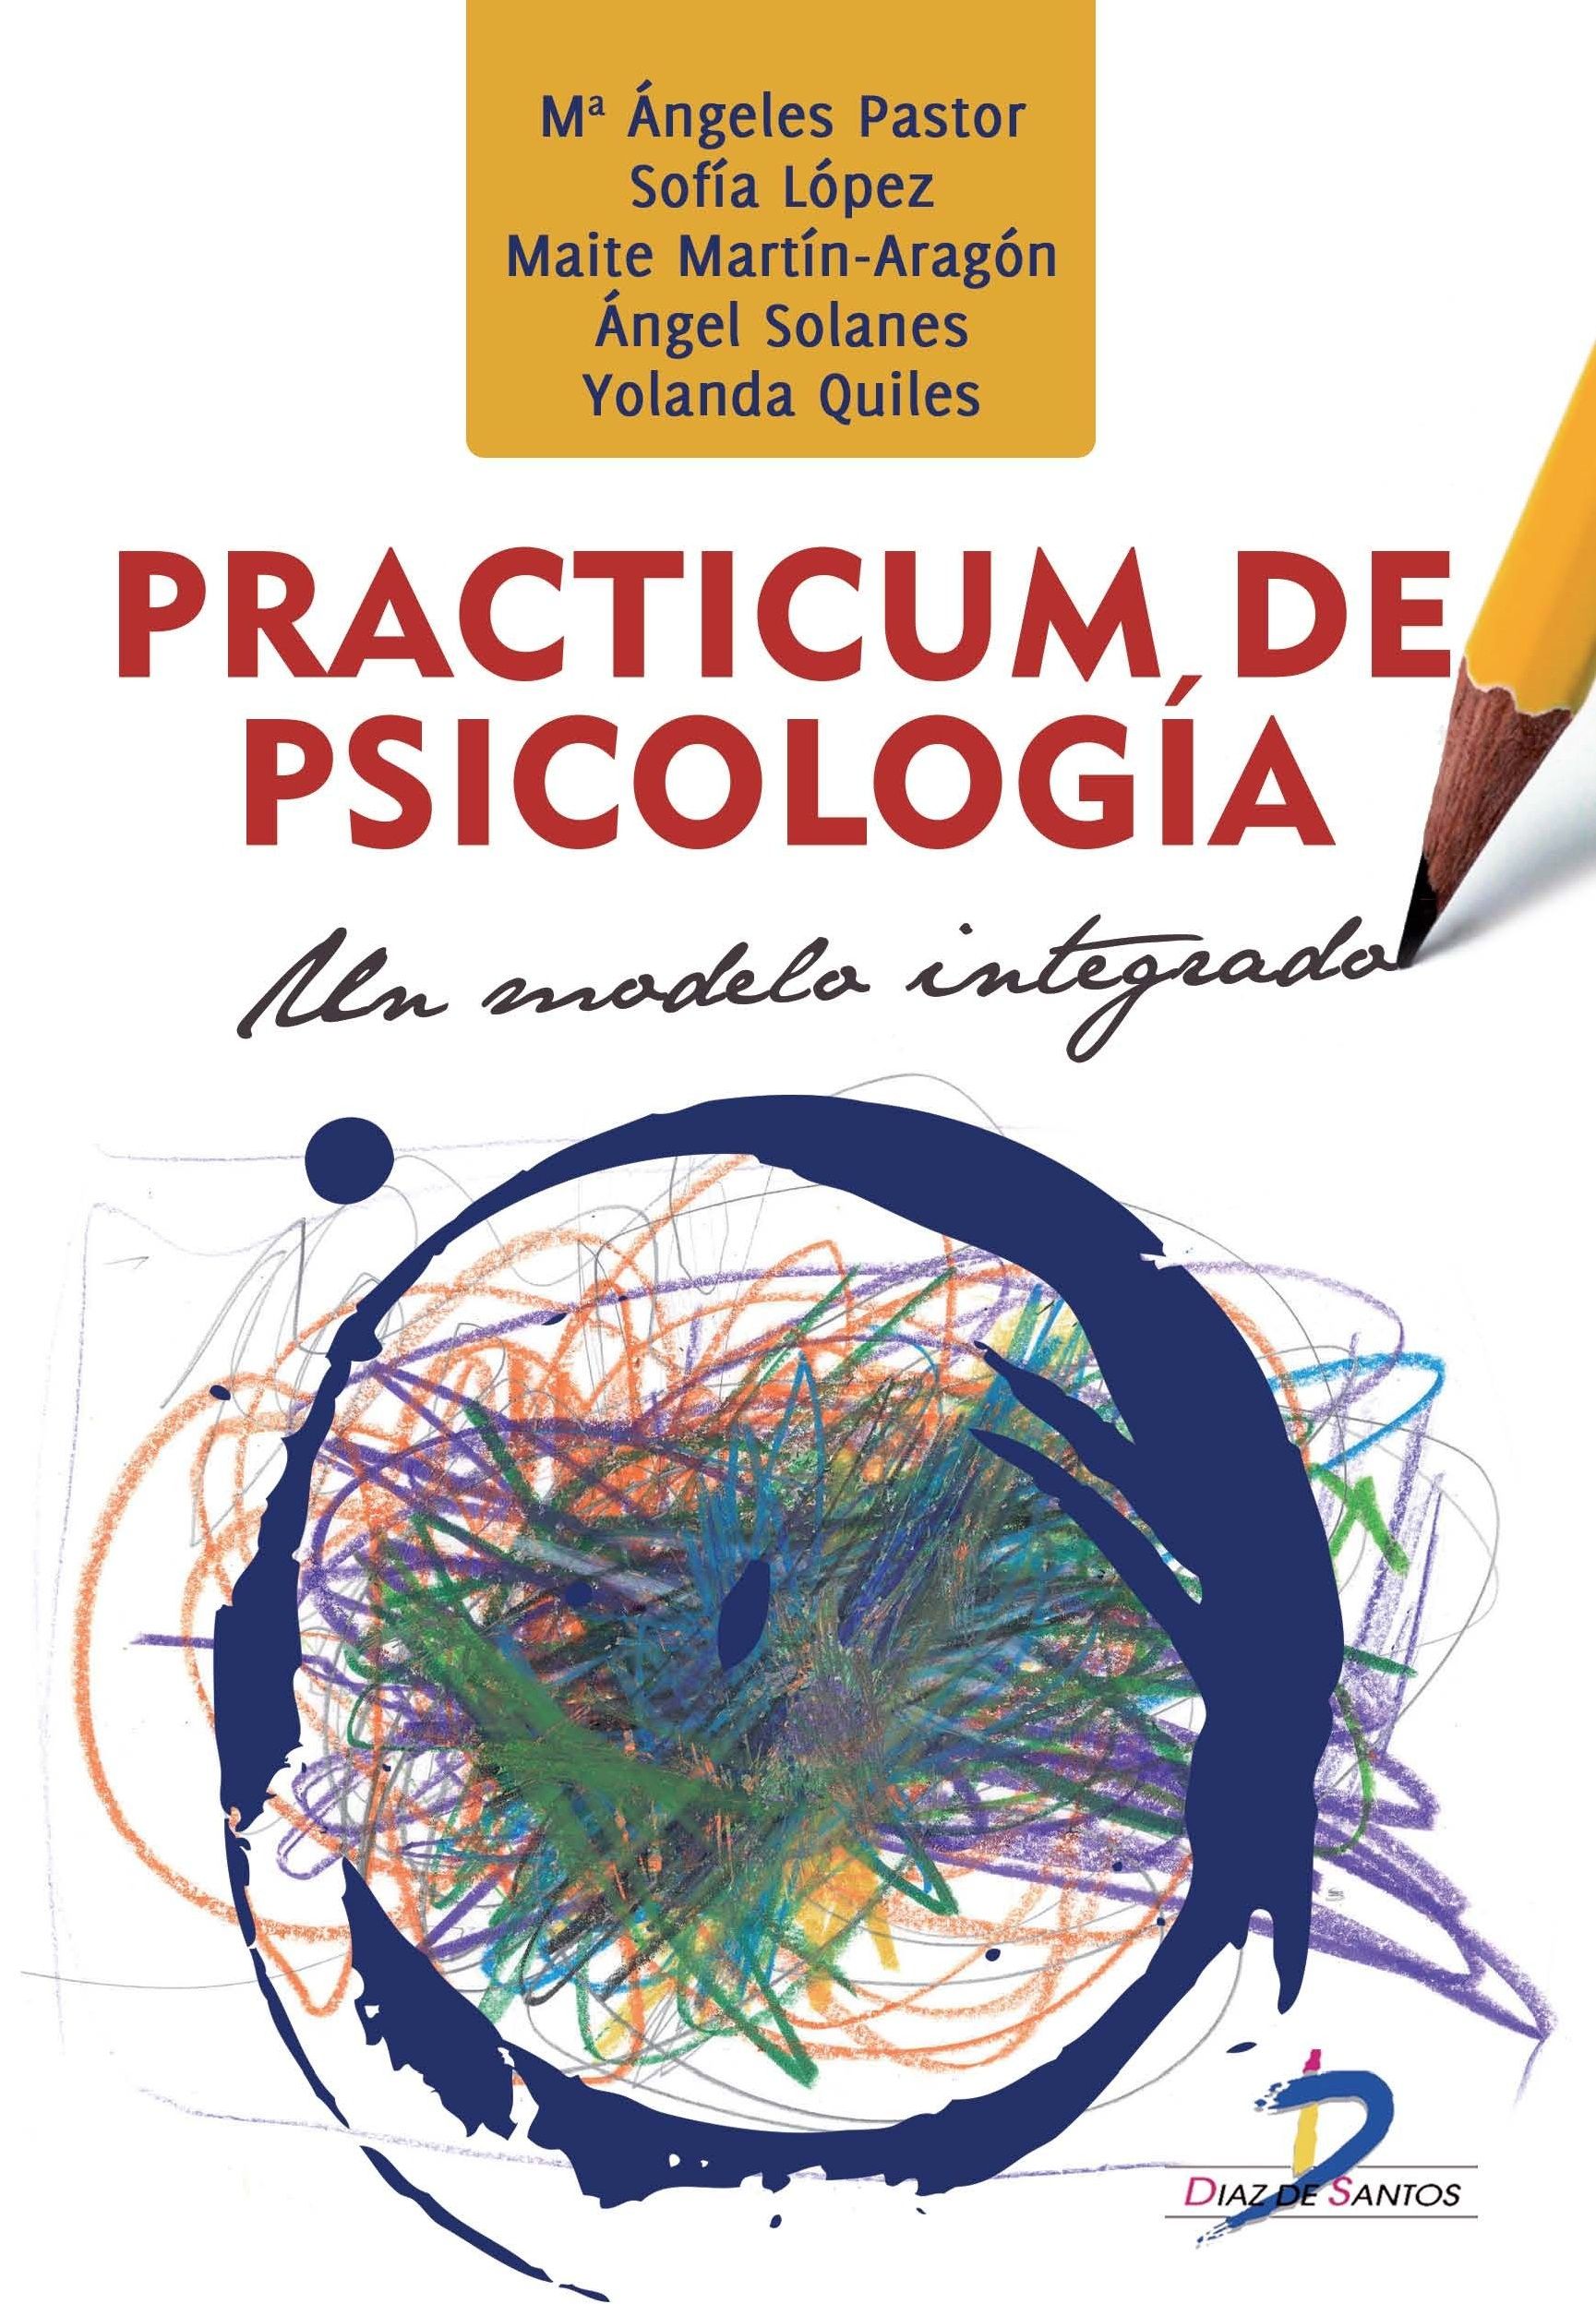 Practicum de psicología: Un modelo integrado